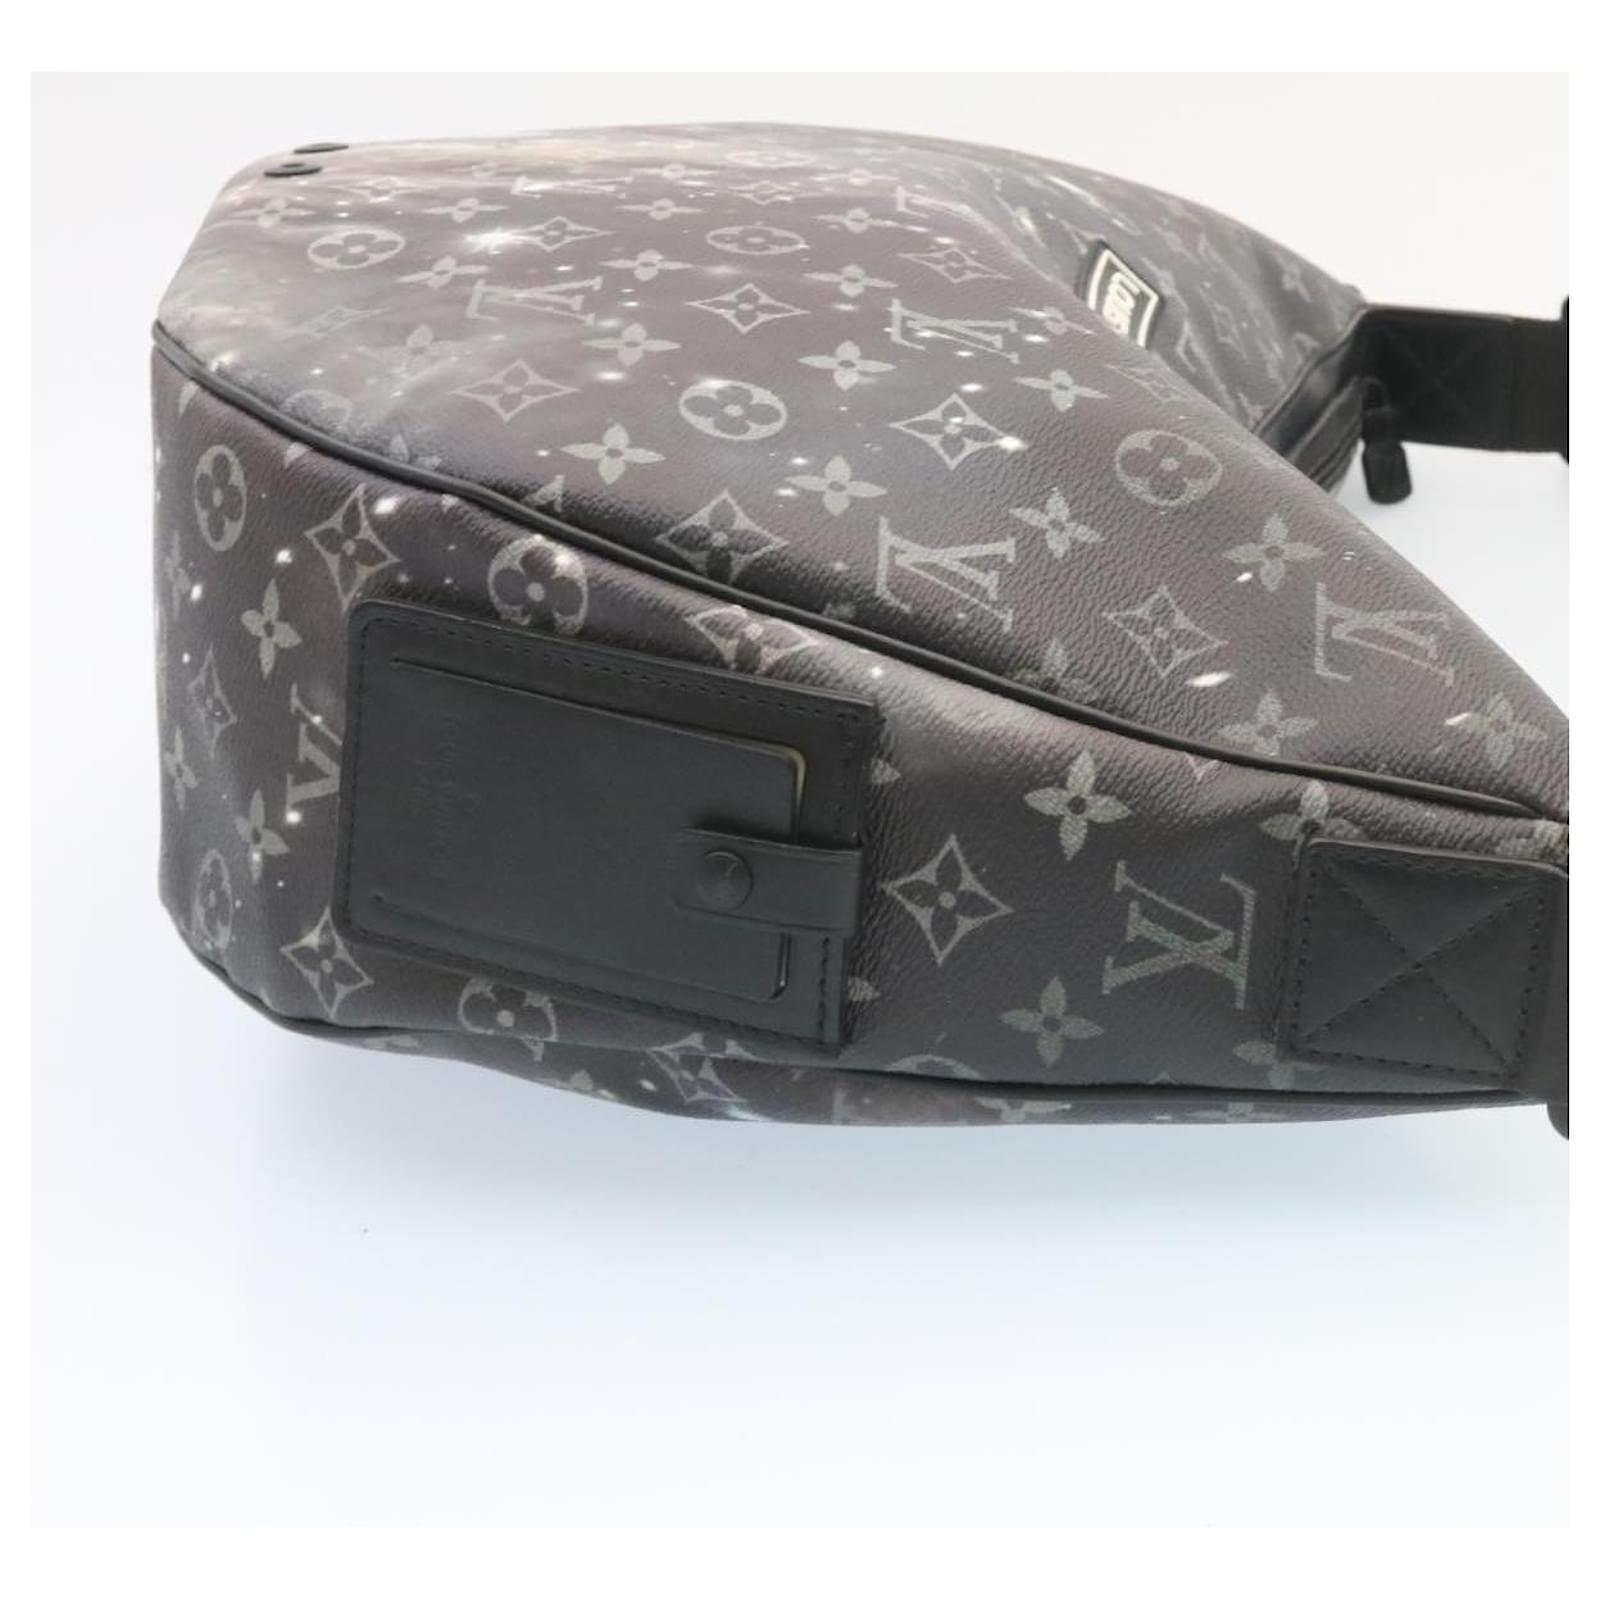 Authenticated used Louis Vuitton Louis Vuitton Alpha Hobo Monogram Galaxy Shoulder Bag M44164 PVC Leather Gray Black, Adult Unisex, Size: (HxWxD)